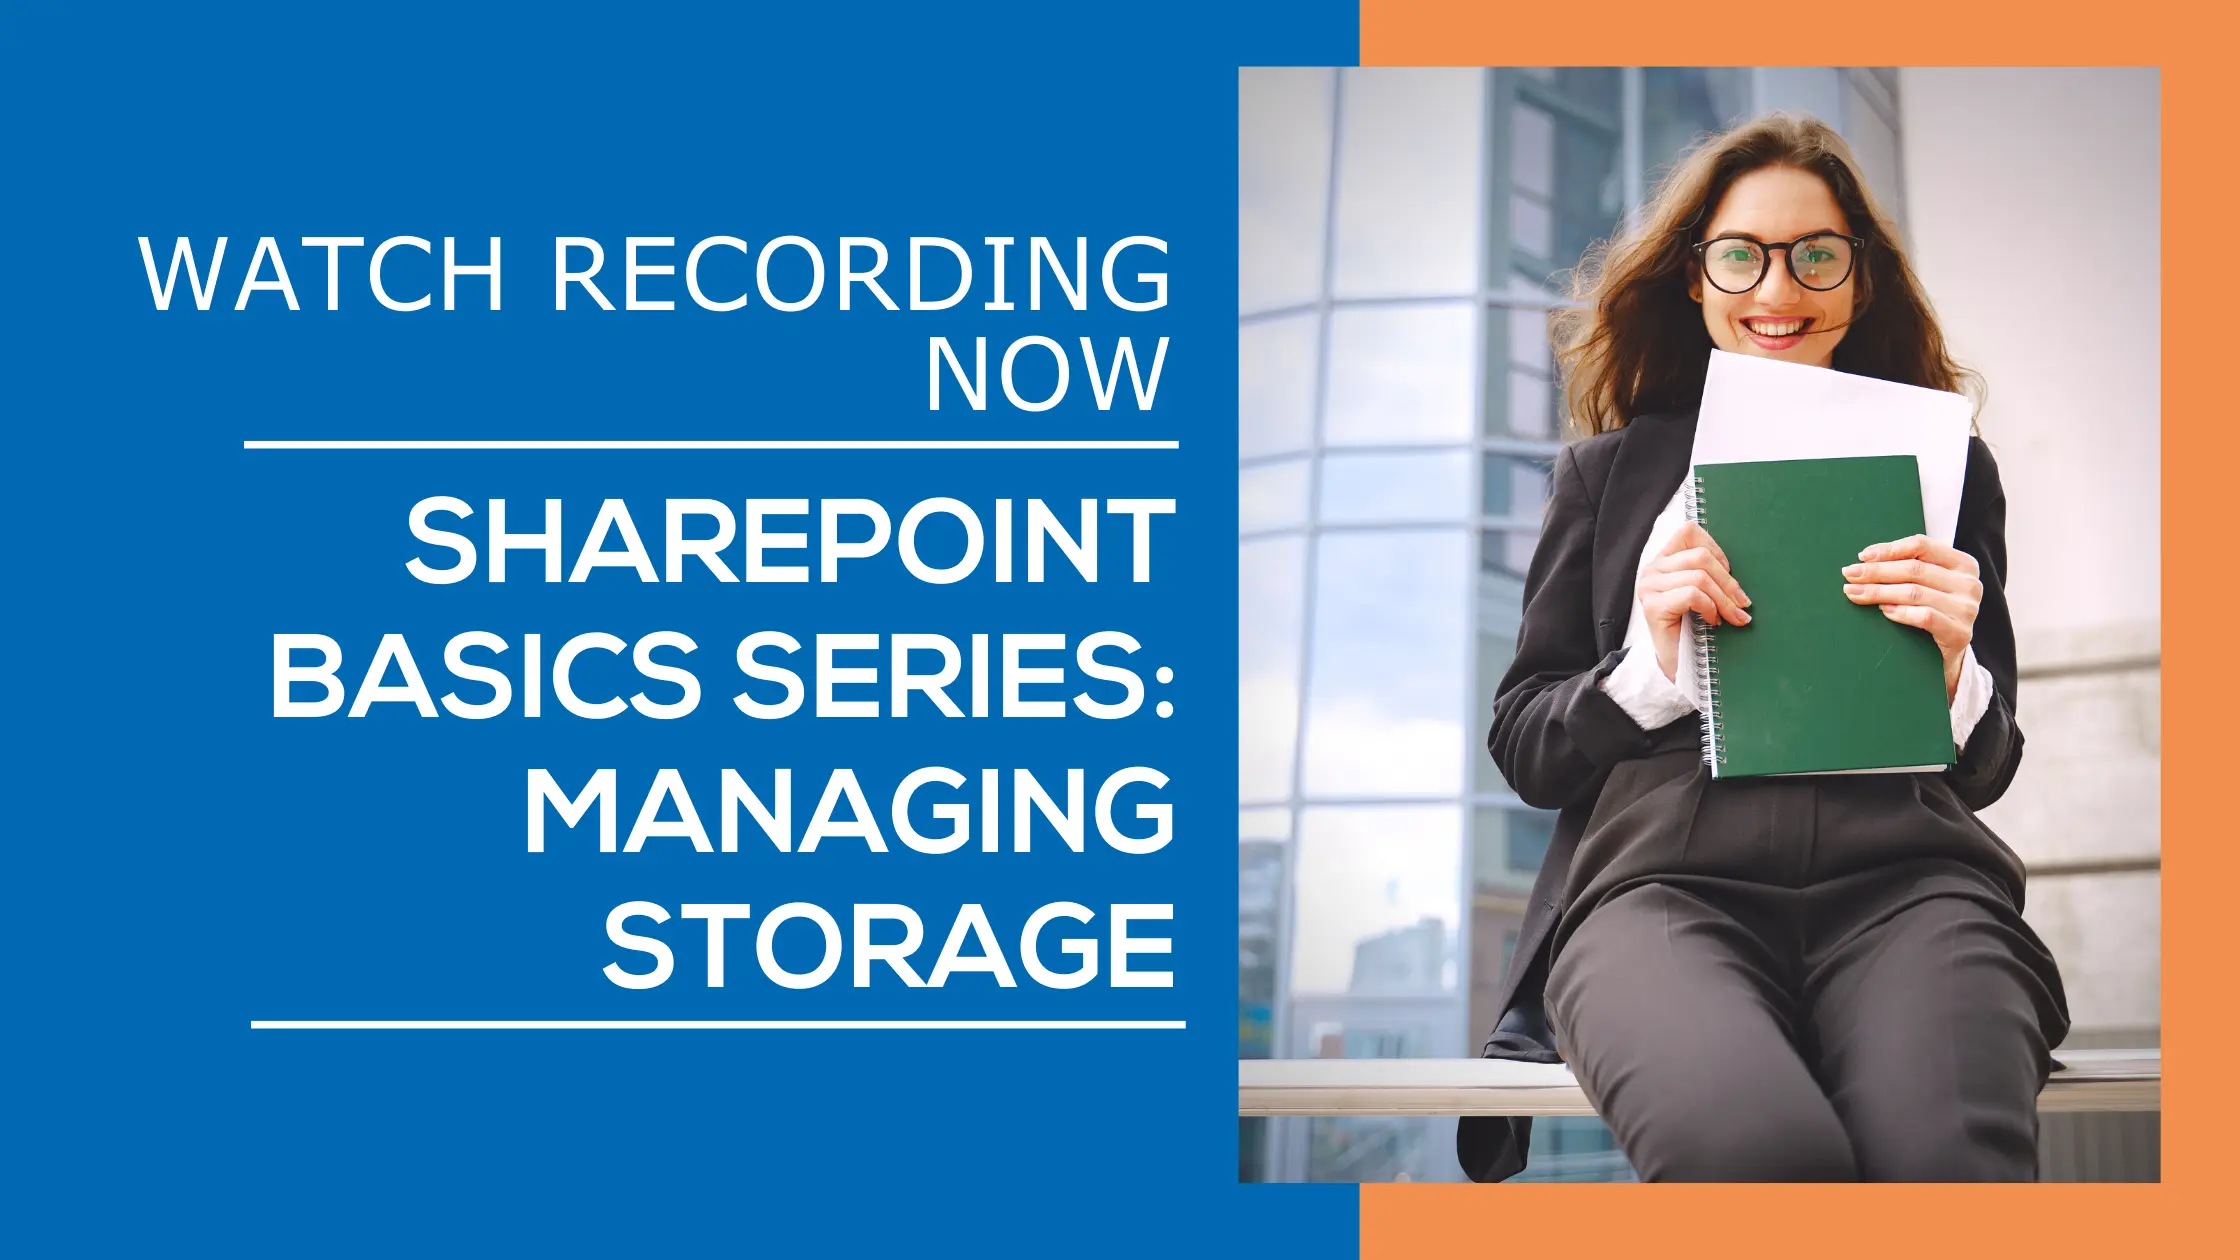 Webinar - SharePoint Basics Series Managing Storage